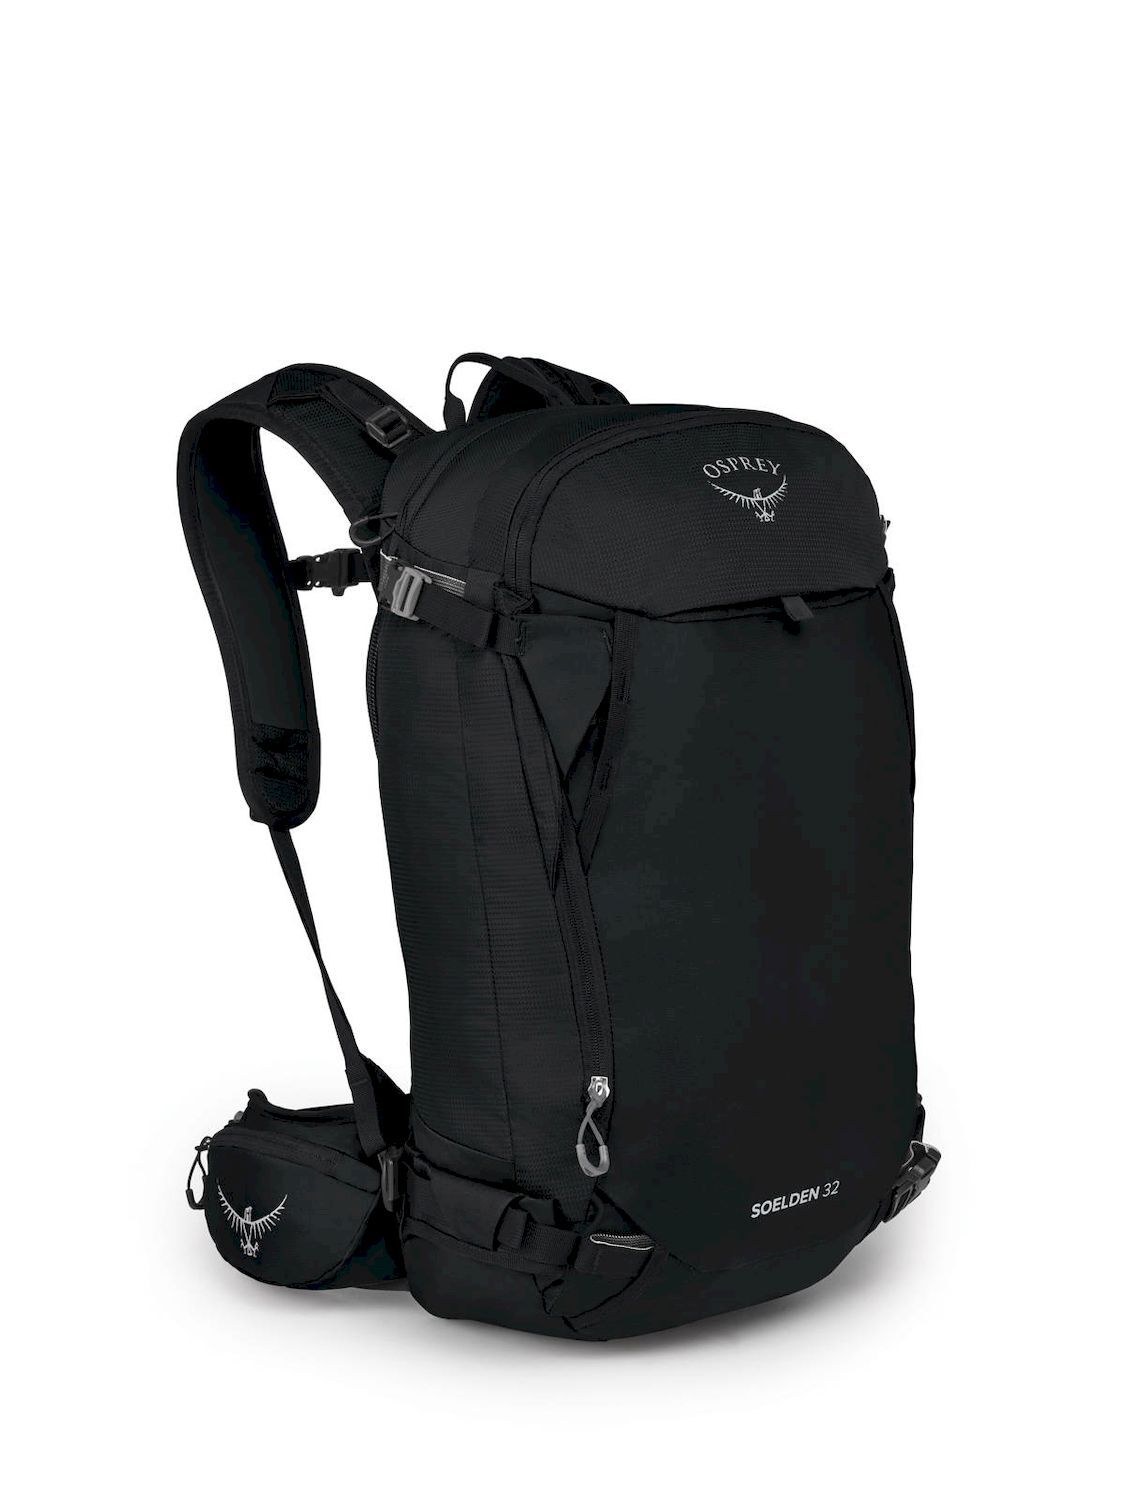 Osprey Soelden 32 - Ski backpack - Men's